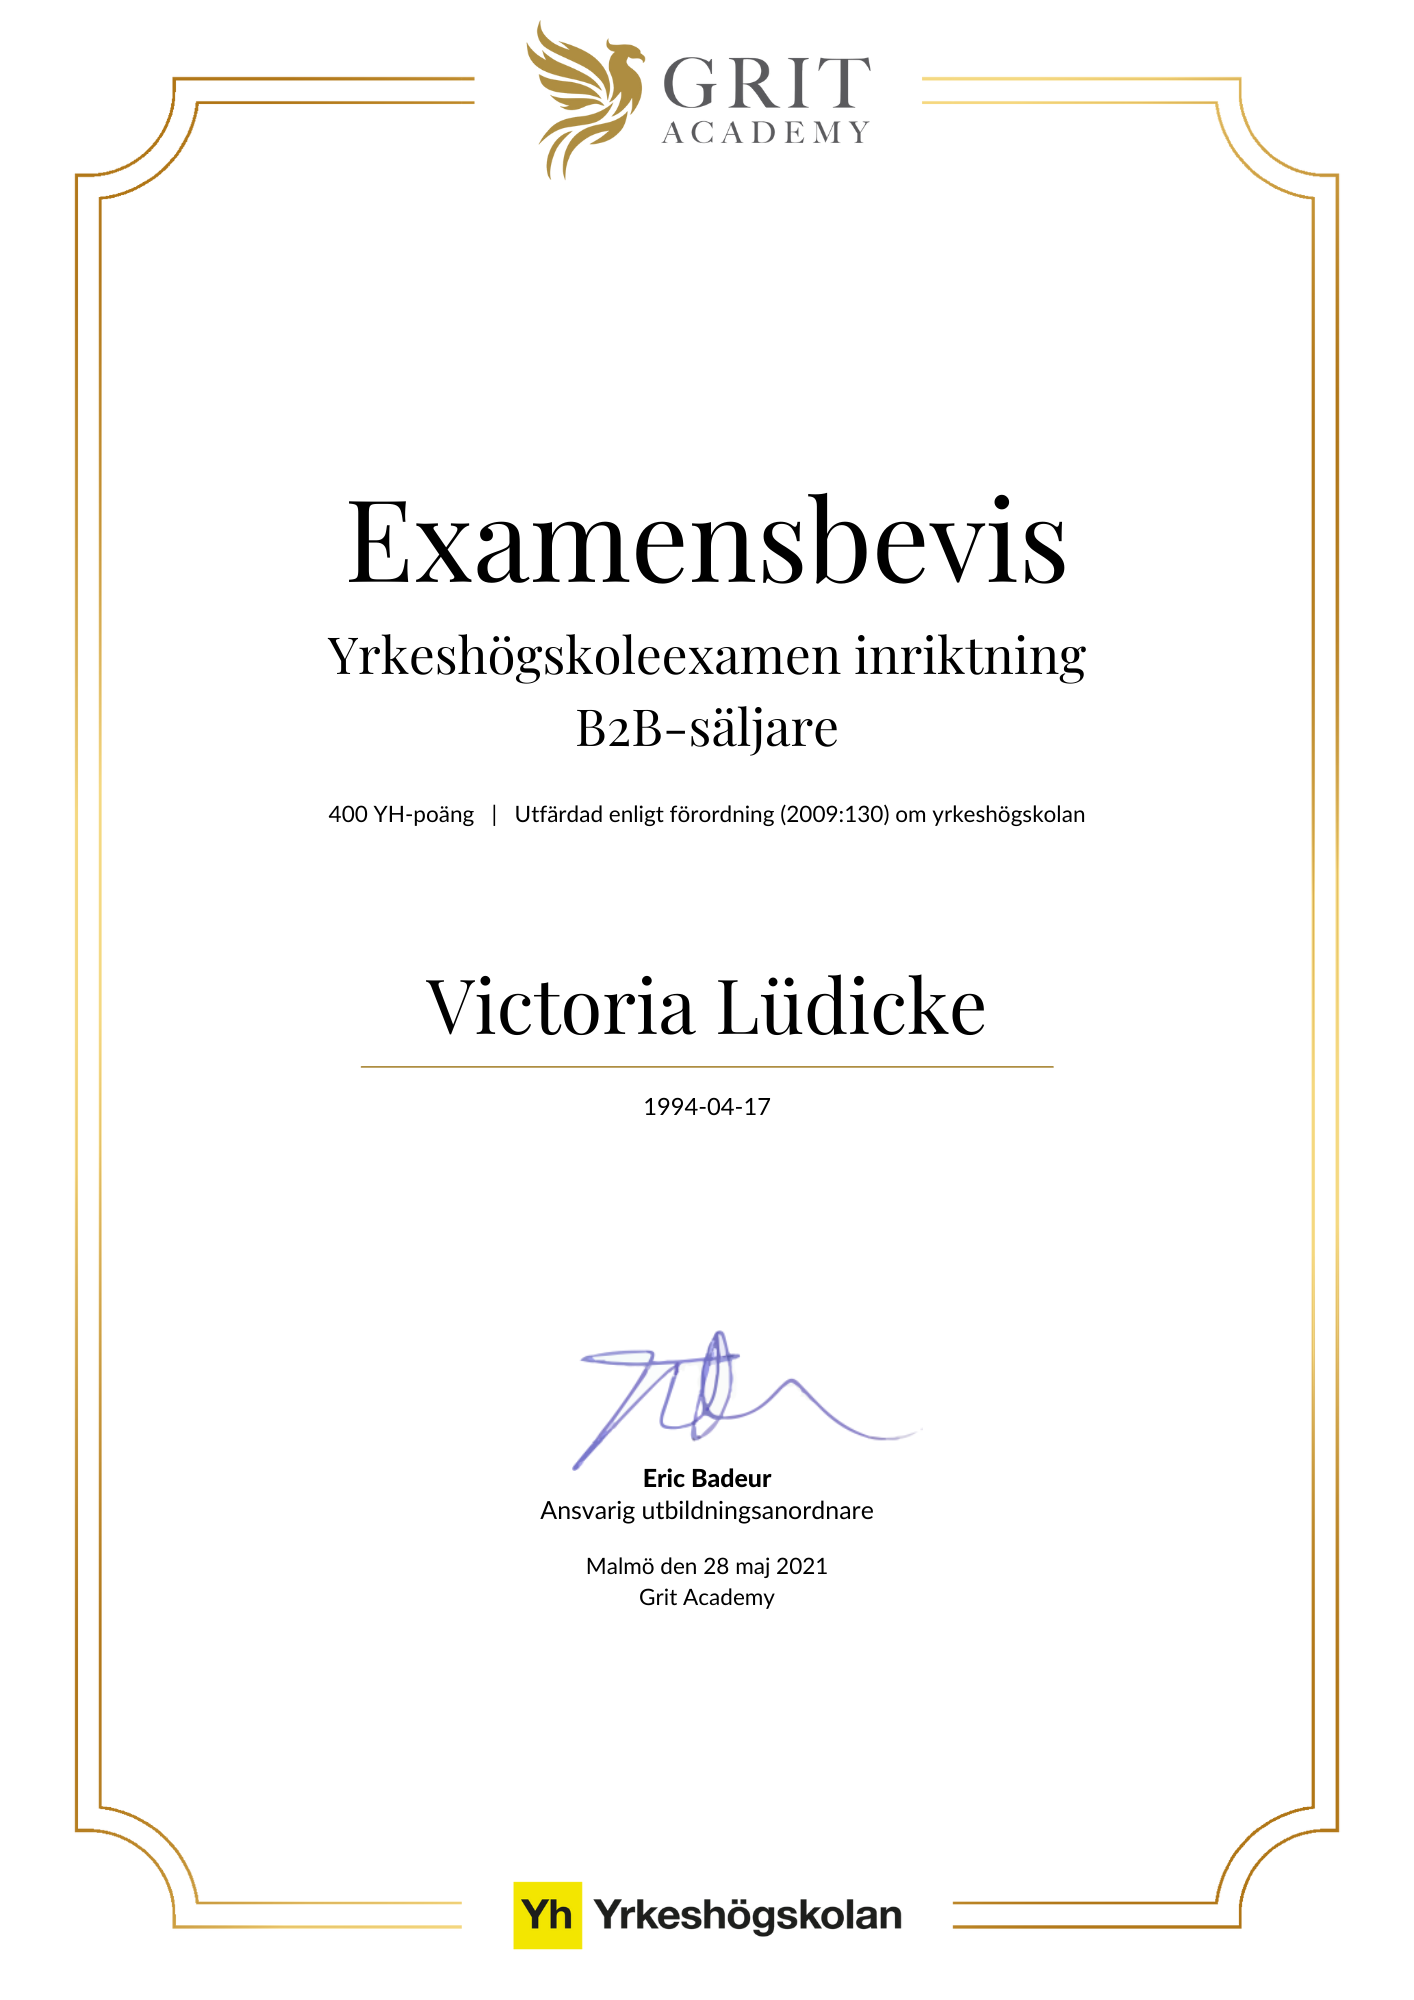 Examensbevis Victoria Lüdicke - 1